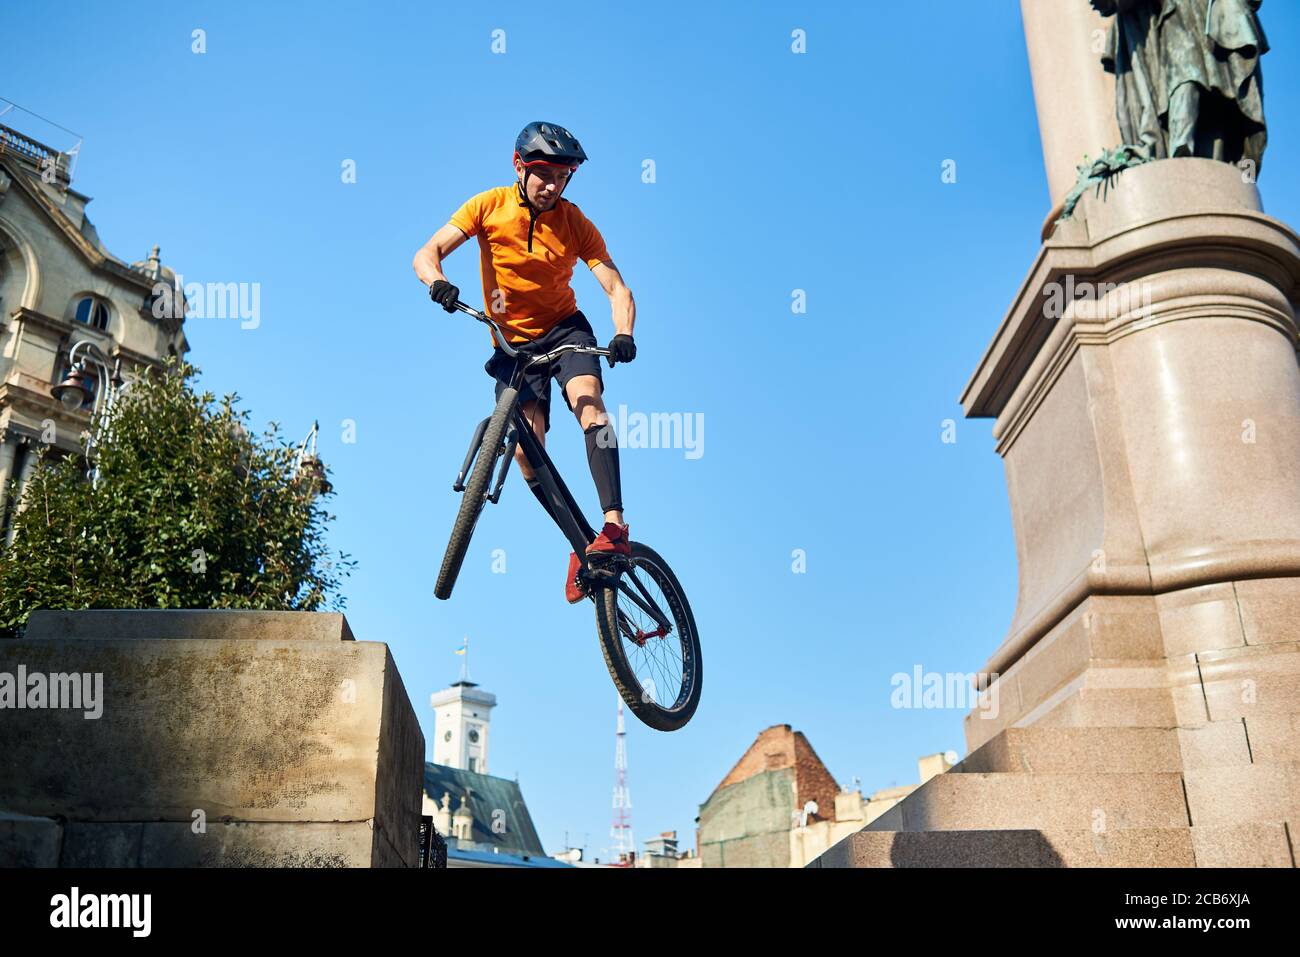 Blick von unten extremer Mann hält ein Sportfahrrad und hängt in der Luft. Radfahrer schaut nach unten, wenn er Trick macht. Konzept des Tricks. Stockfoto